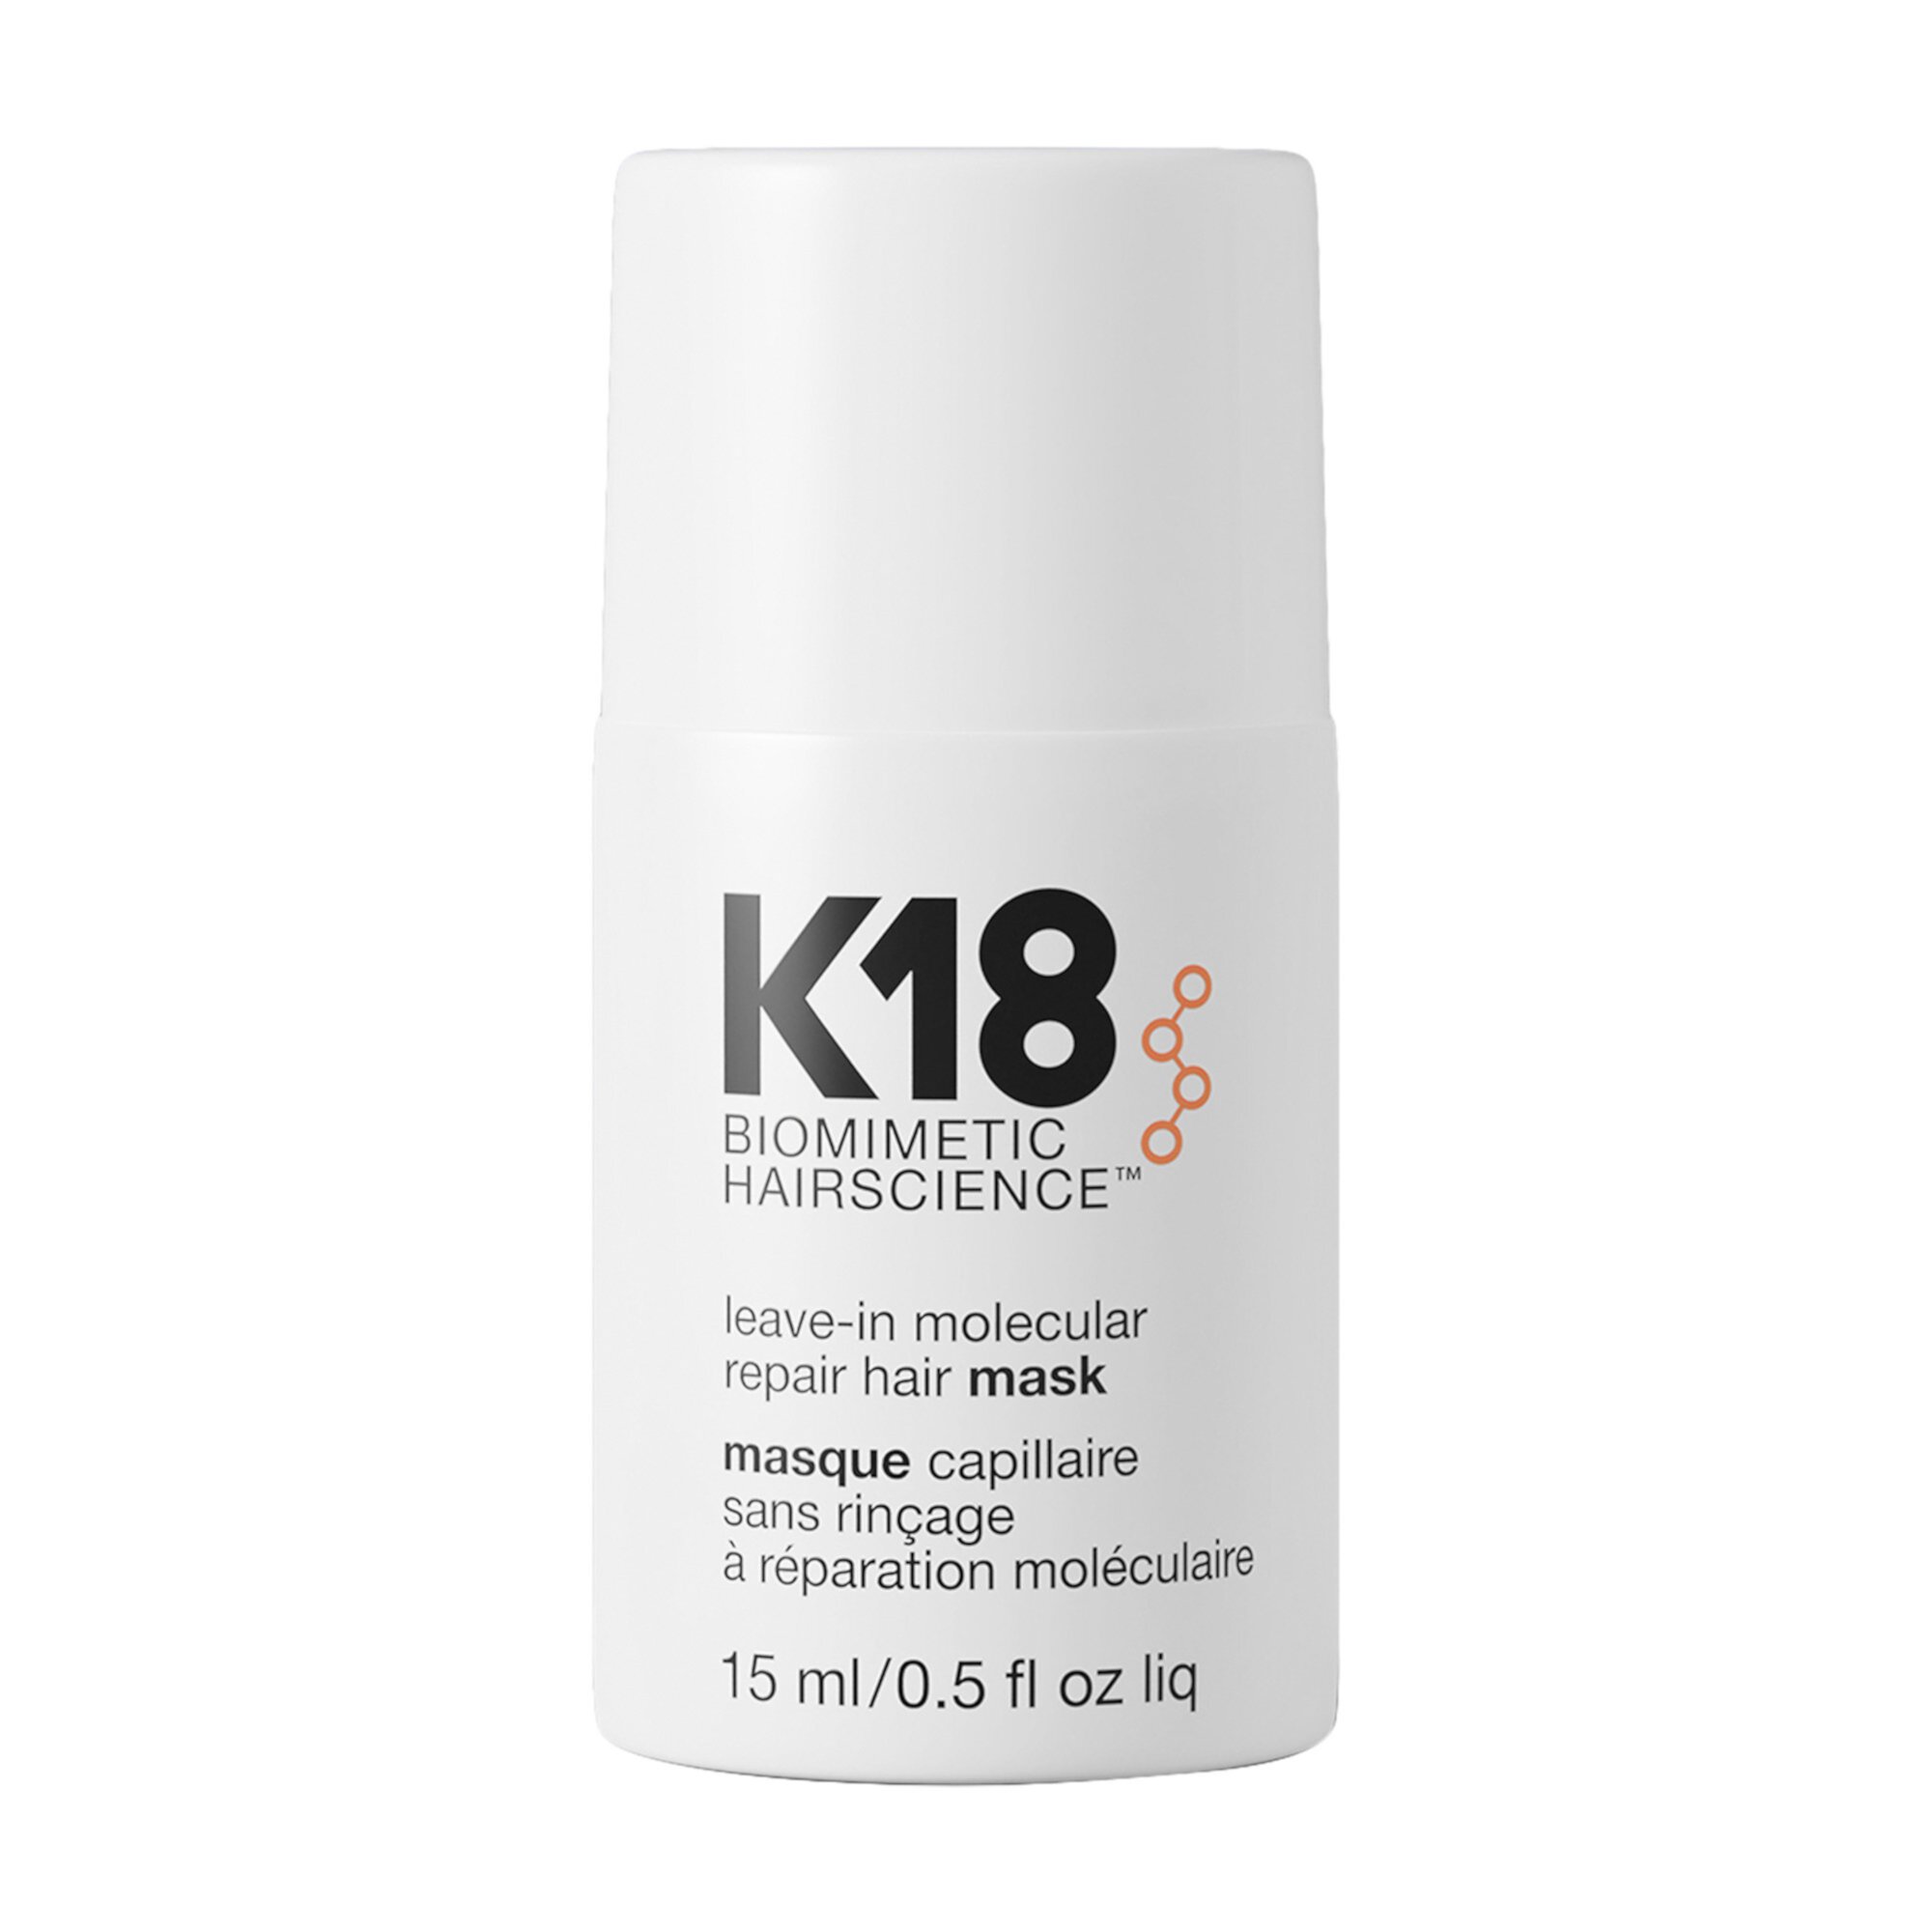 Несмываемая мини-маска для молекулярного восстановления волос K18 Biomimetic Hairscience